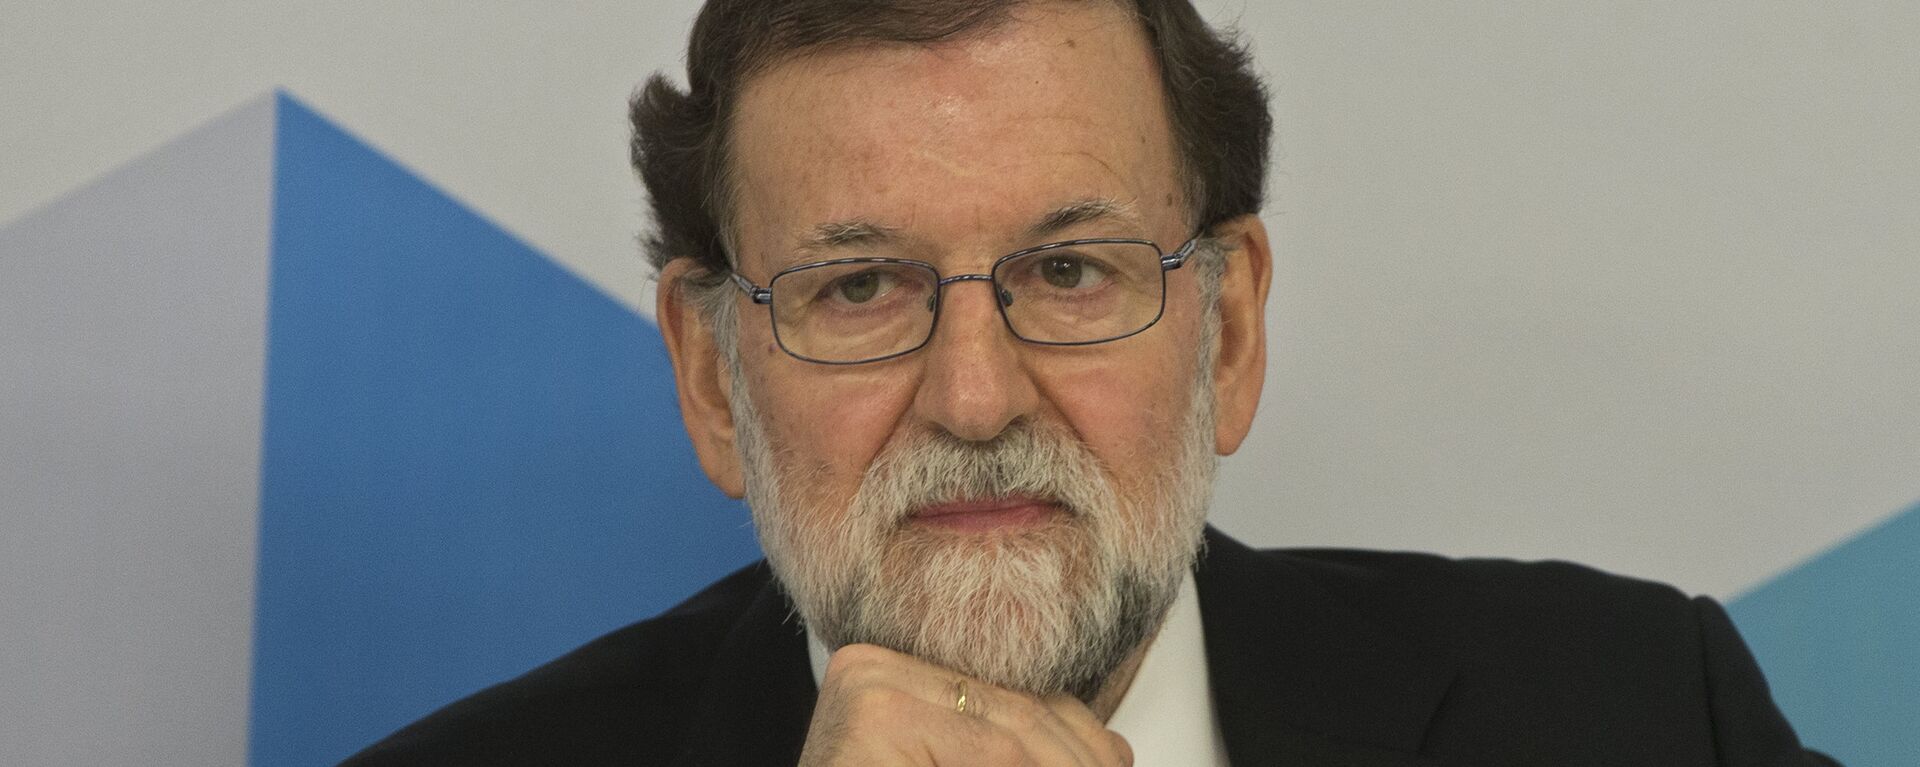 Mariano Rajoy, el expresidente del Gobierno español - Sputnik Mundo, 1920, 24.03.2021